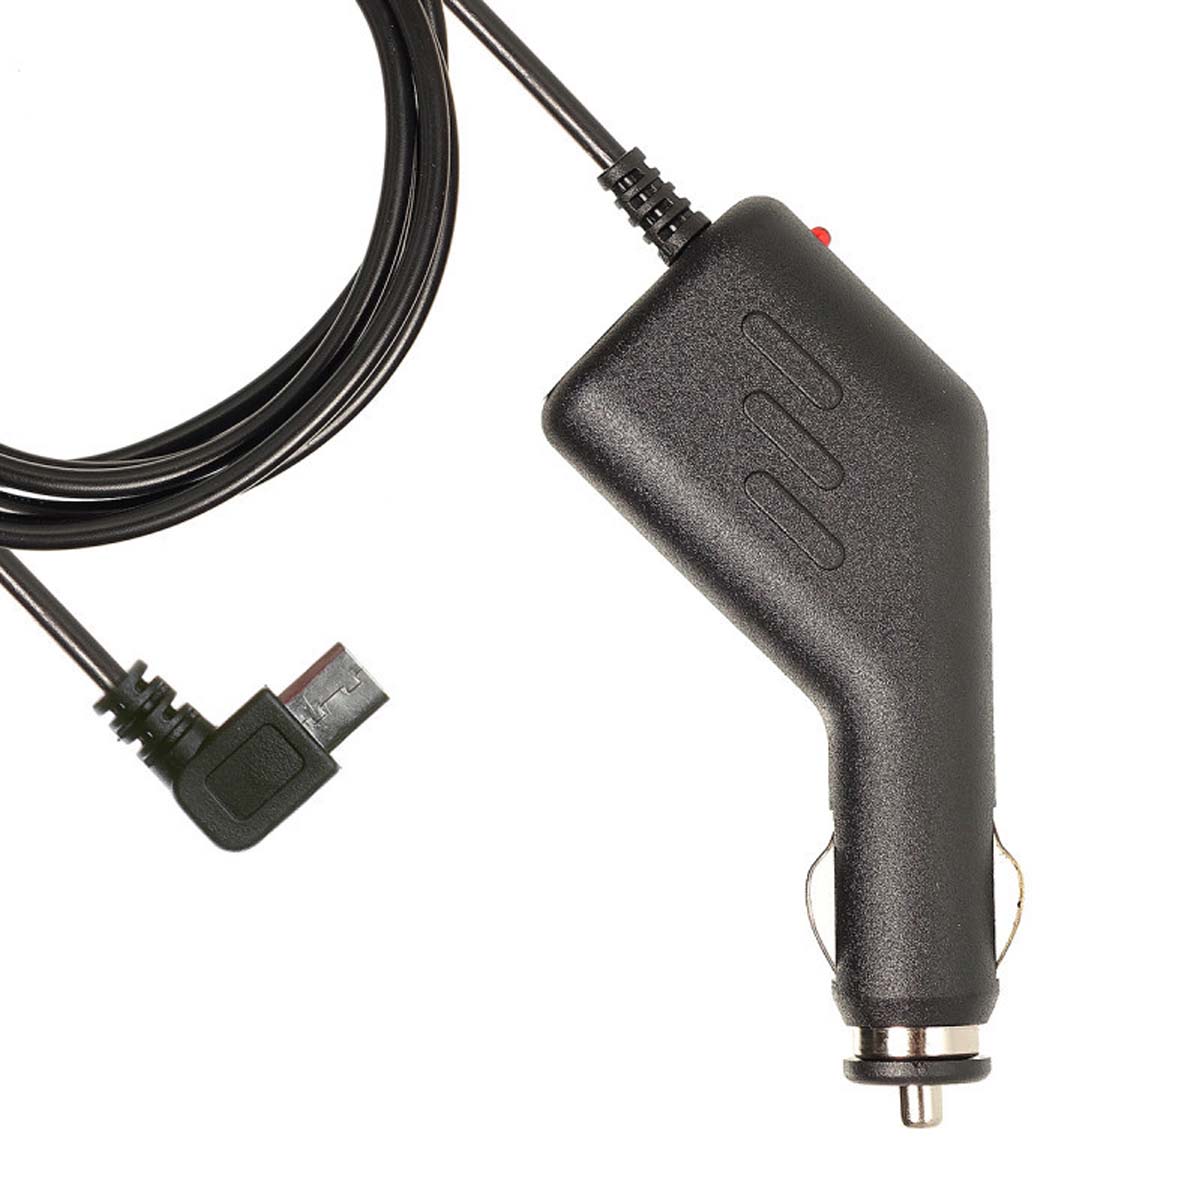 АЗУ (Автомобильное зарядное устройство) LP7 V8 с кабелем Micro USB, длина 3.5 метра, цвет черный